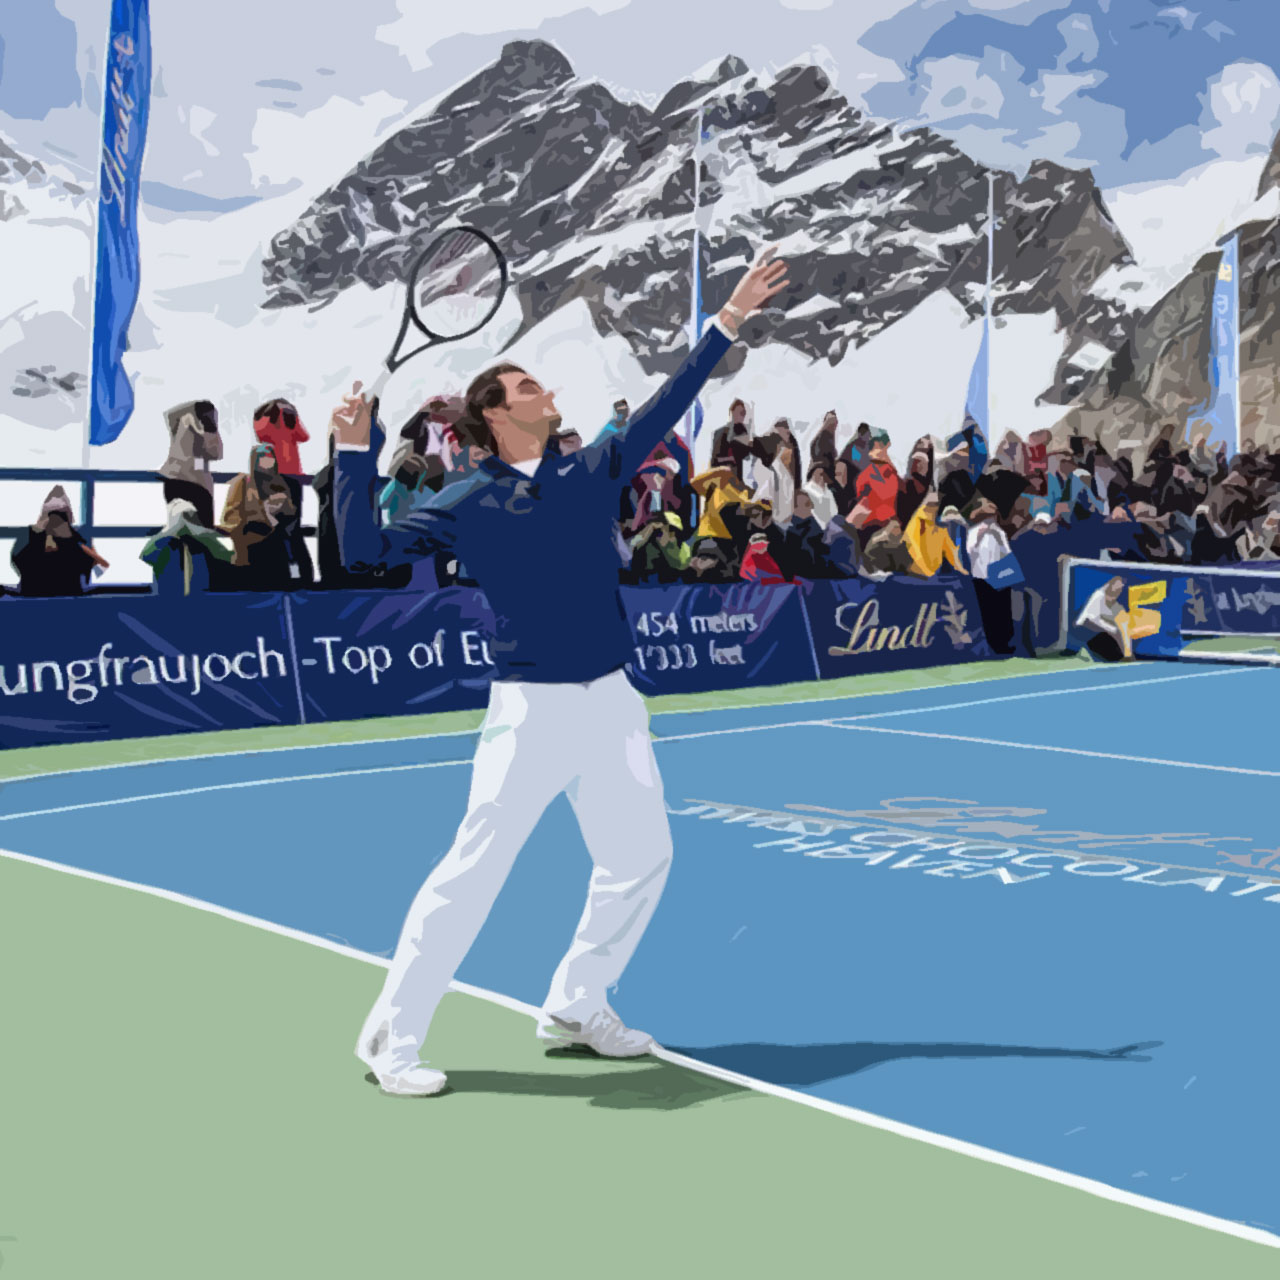 Roger Federer serves against Lindsey Vonn in the Swiss Alps